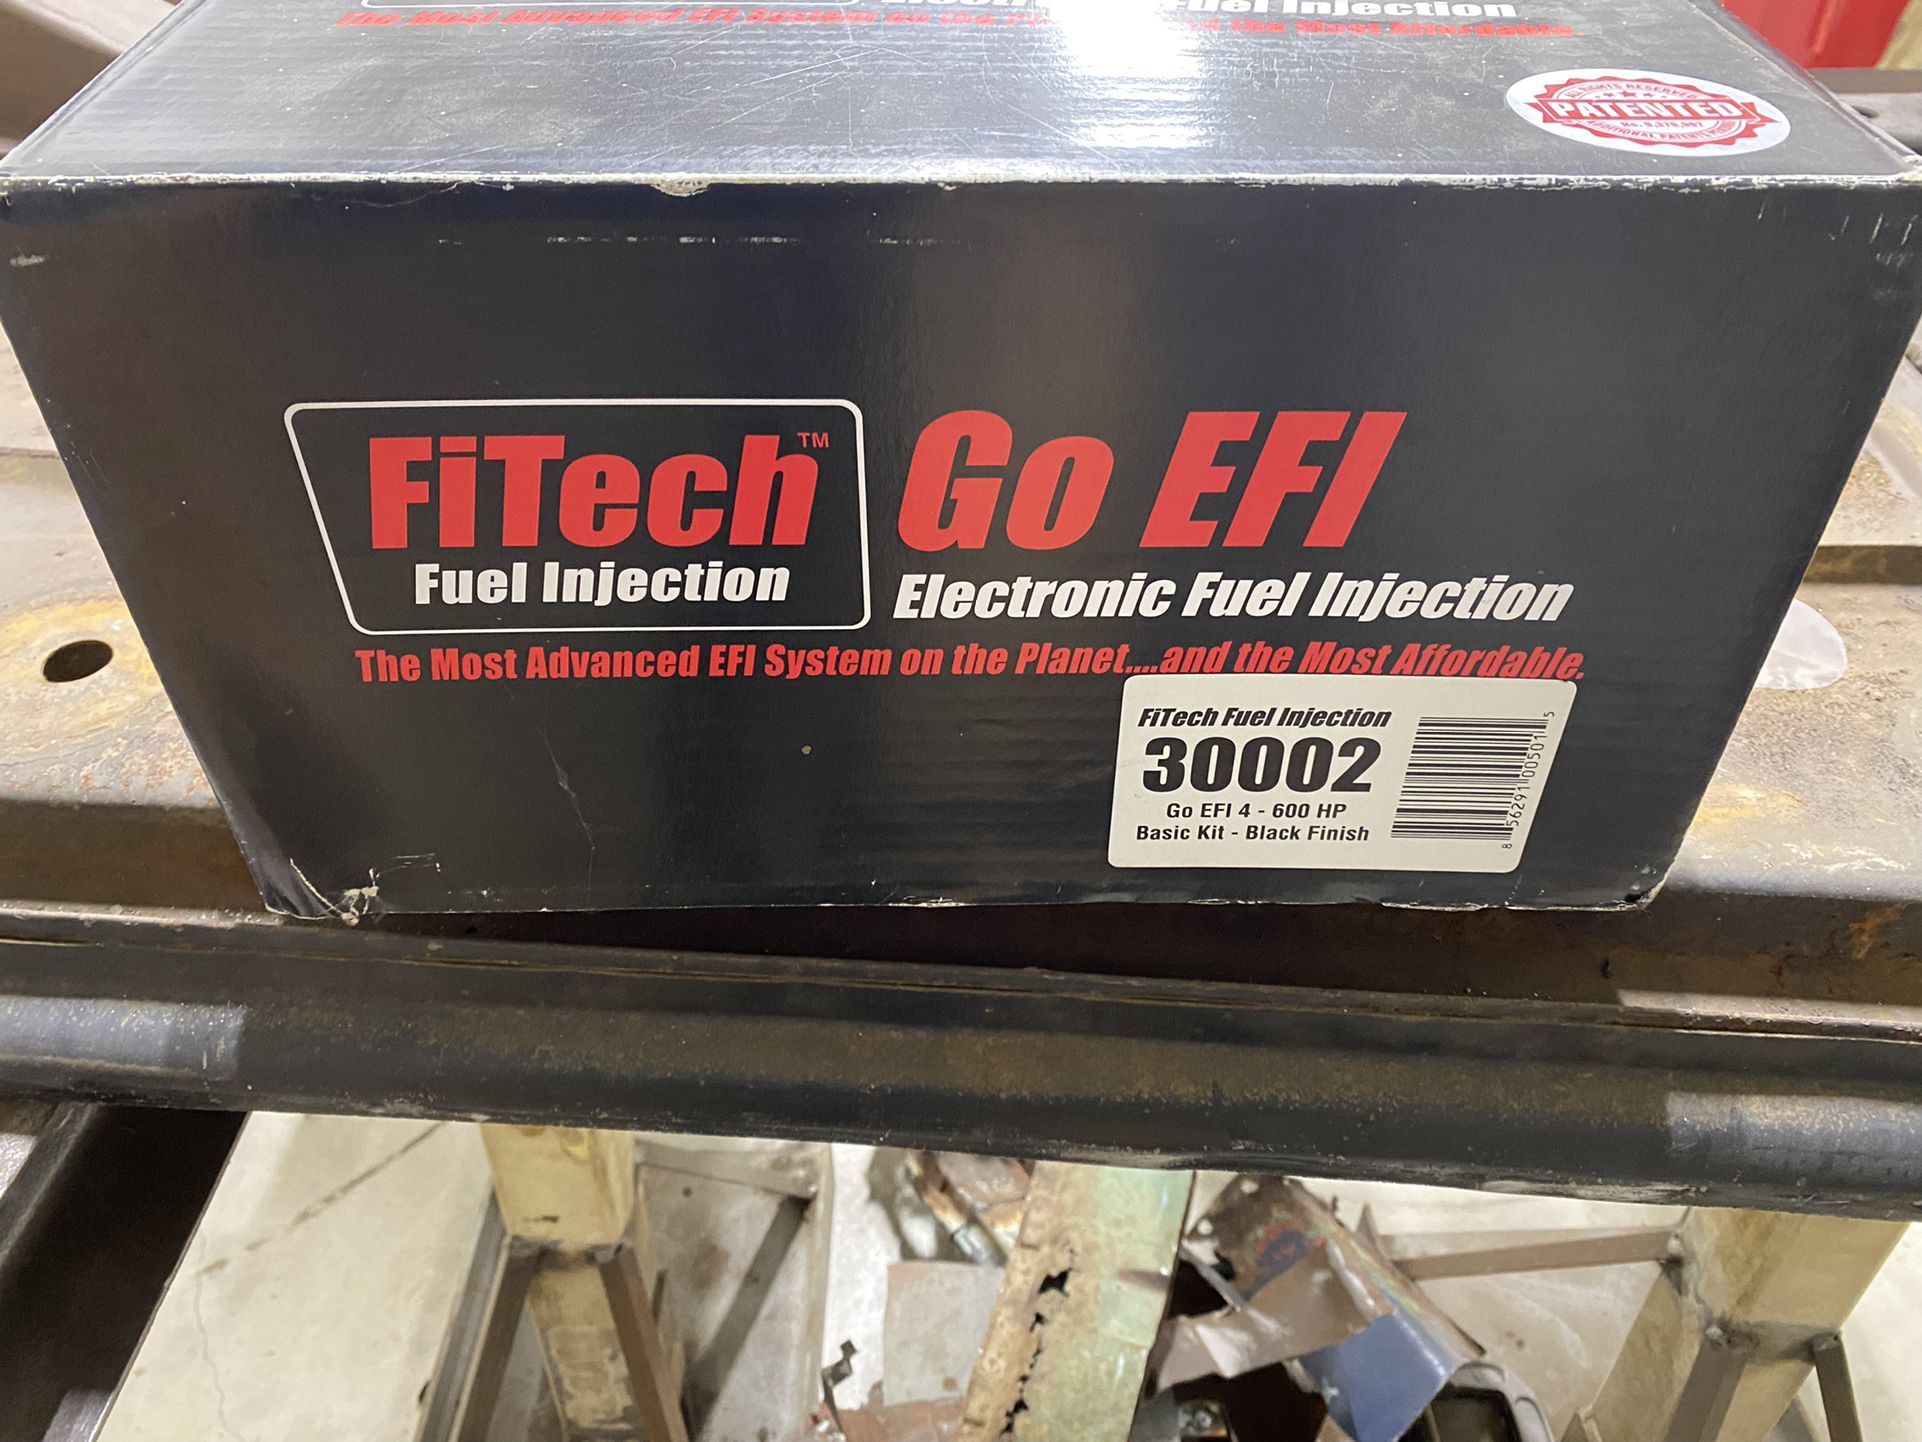 FiTech Go EFI